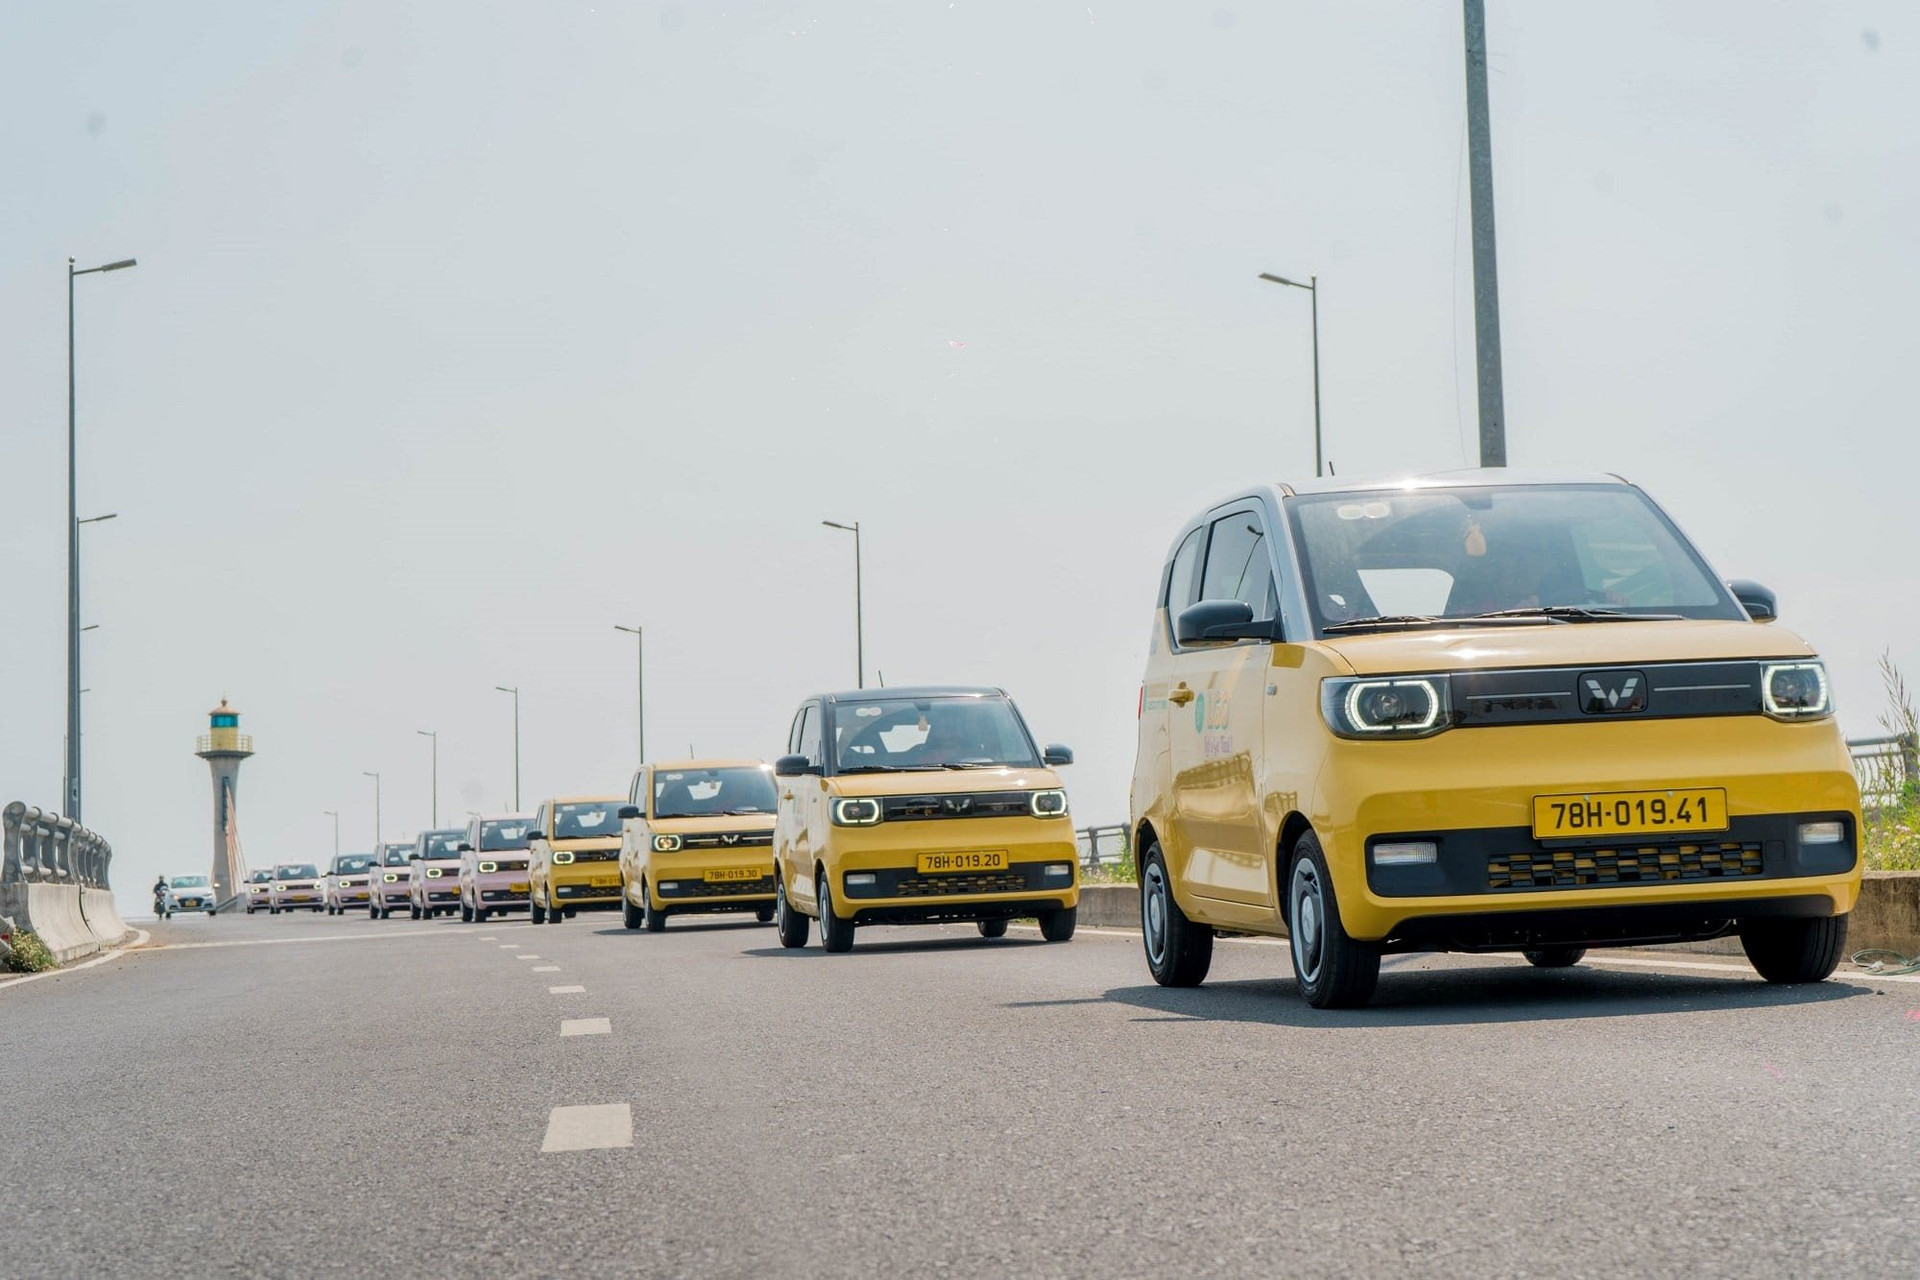 Giá từ 8.000 đồng/km, cước của taxi điện mini đầu tiên trên thị trường Việt đứng ở đâu so với GSM, Grab và taxi truyền thống?- Ảnh 3.